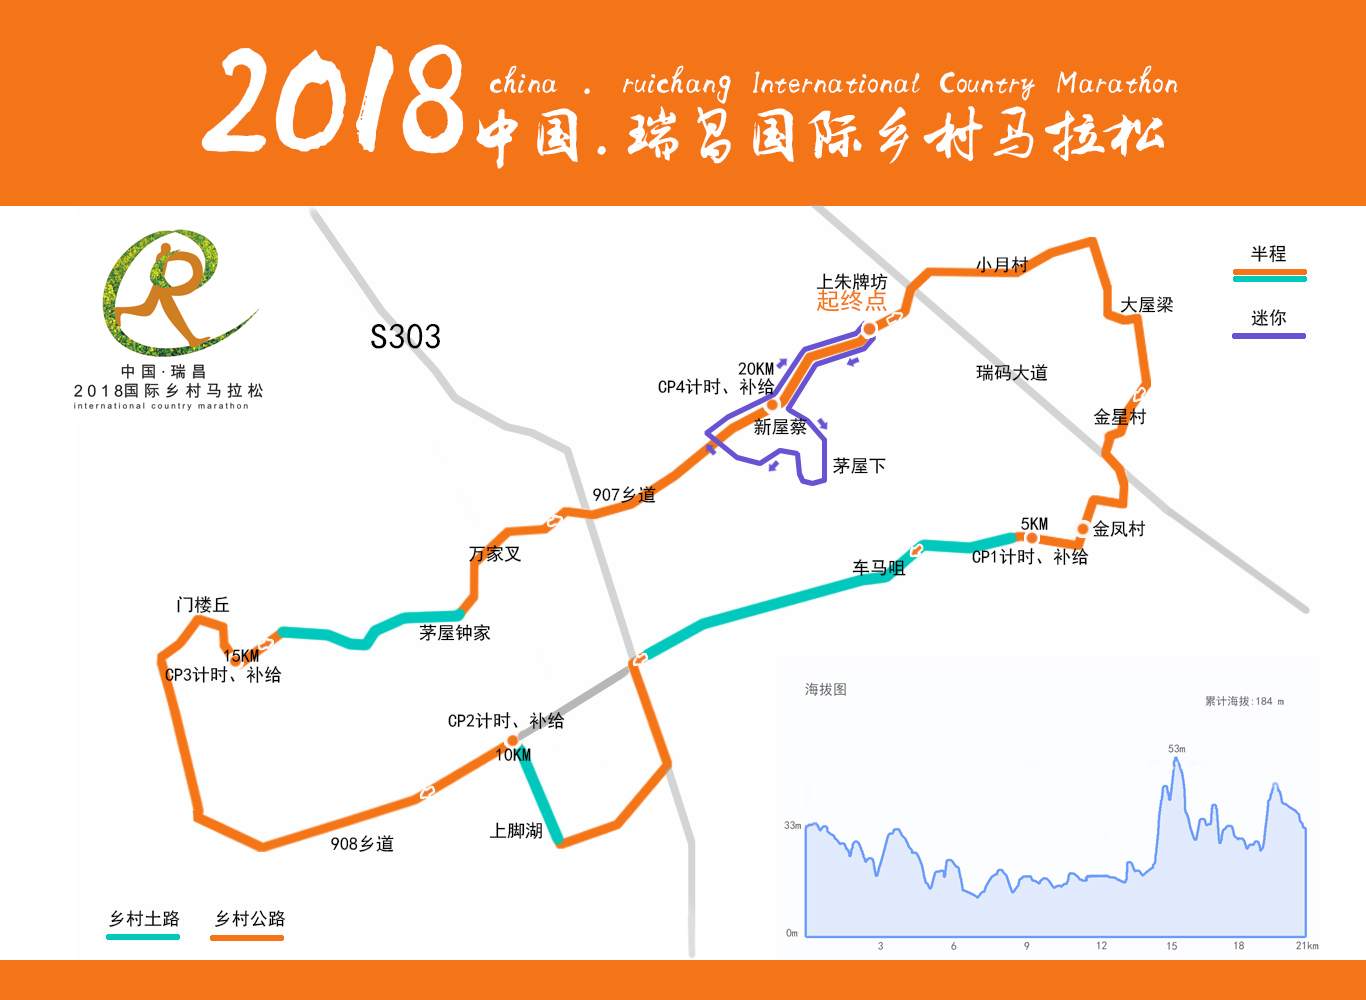 "汉仁杯"2018中国·瑞昌国际乡村马拉松图片